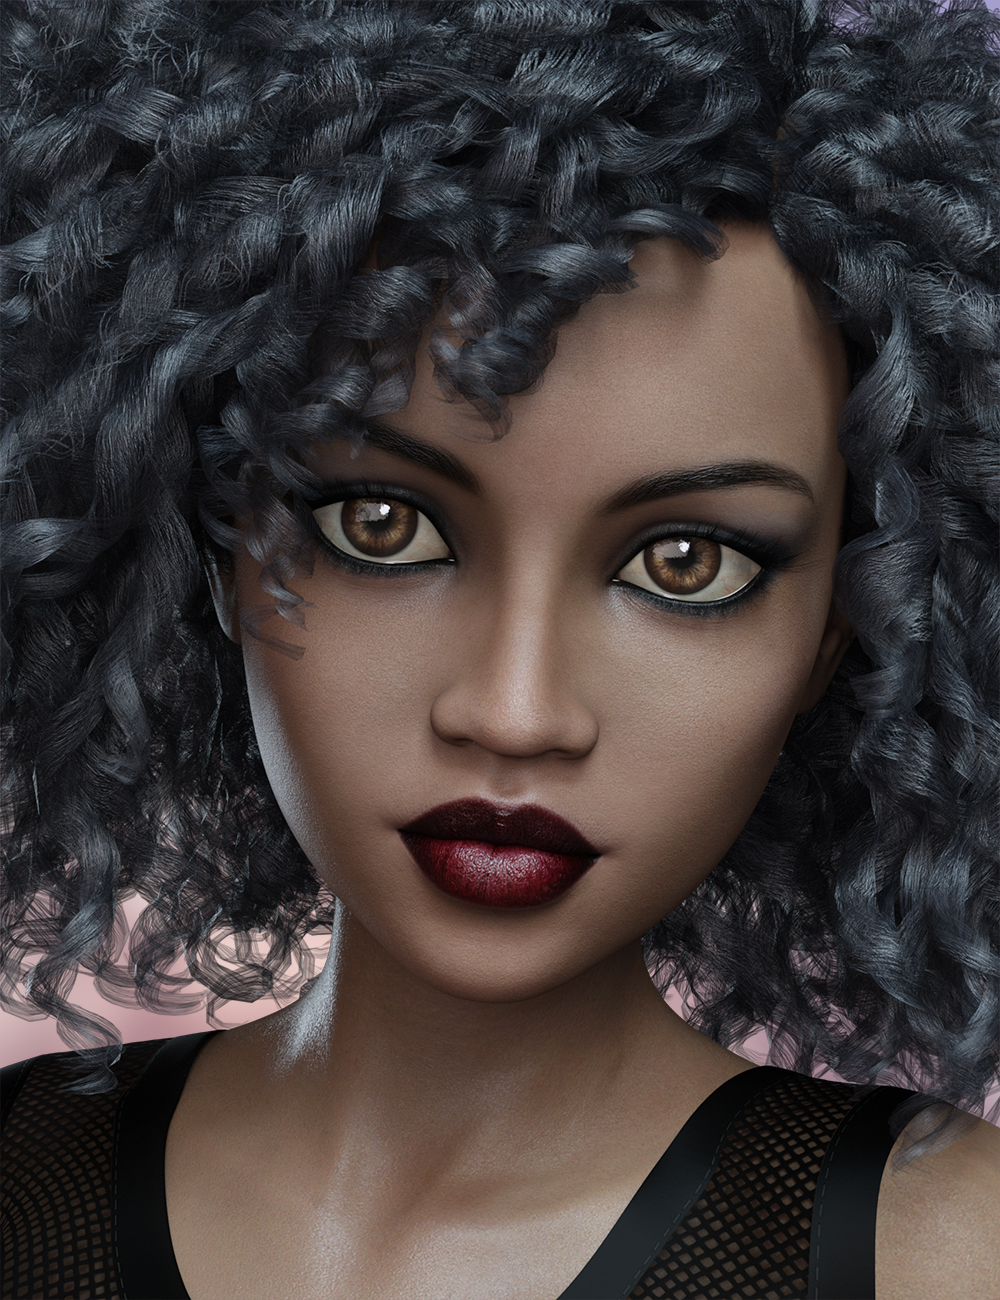 FWSA Destini for The Girl 8 by: Fred Winkler ArtSabby, 3D Models by Daz 3D